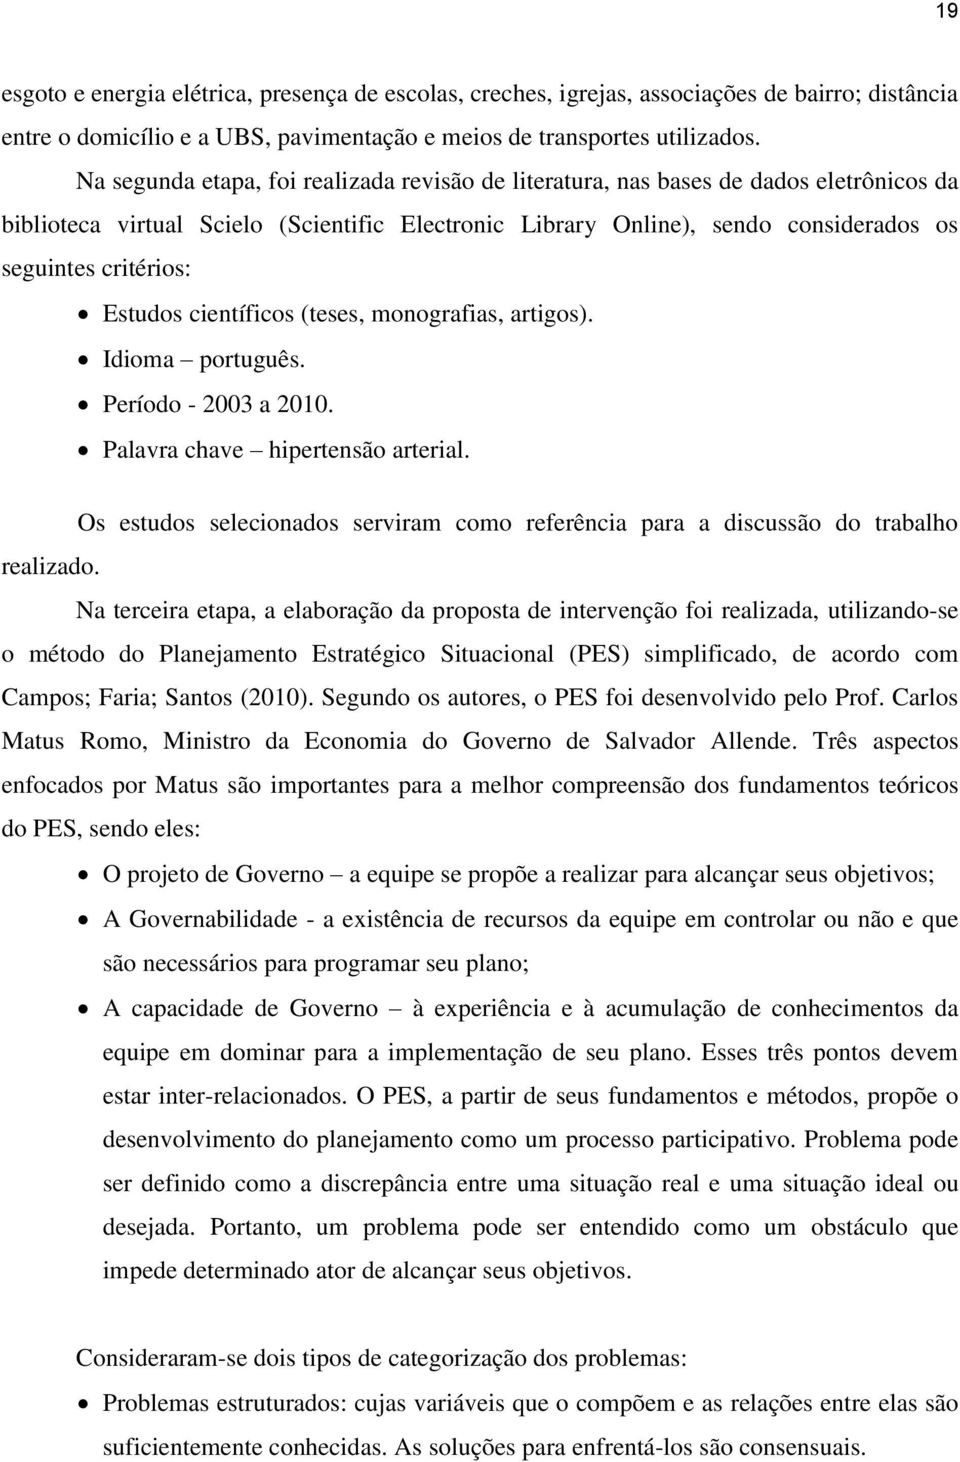 Estudos científicos (teses, monografias, artigos). Idioma português. Período - 2003 a 2010. Palavra chave hipertensão arterial.